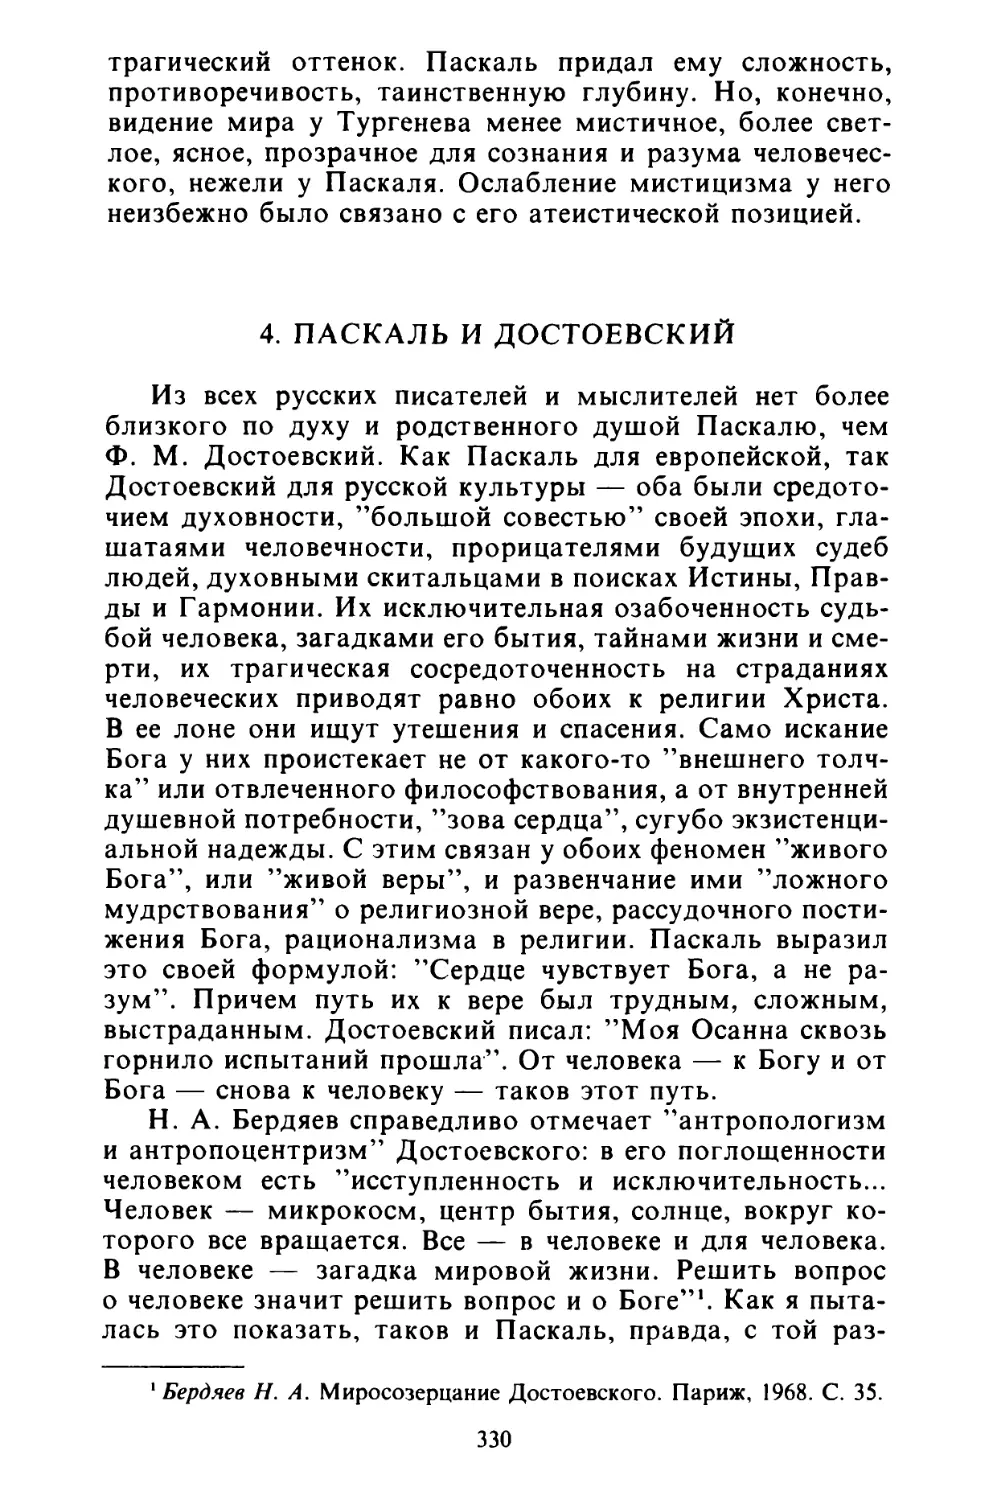 4. Паскаль и Достоевский